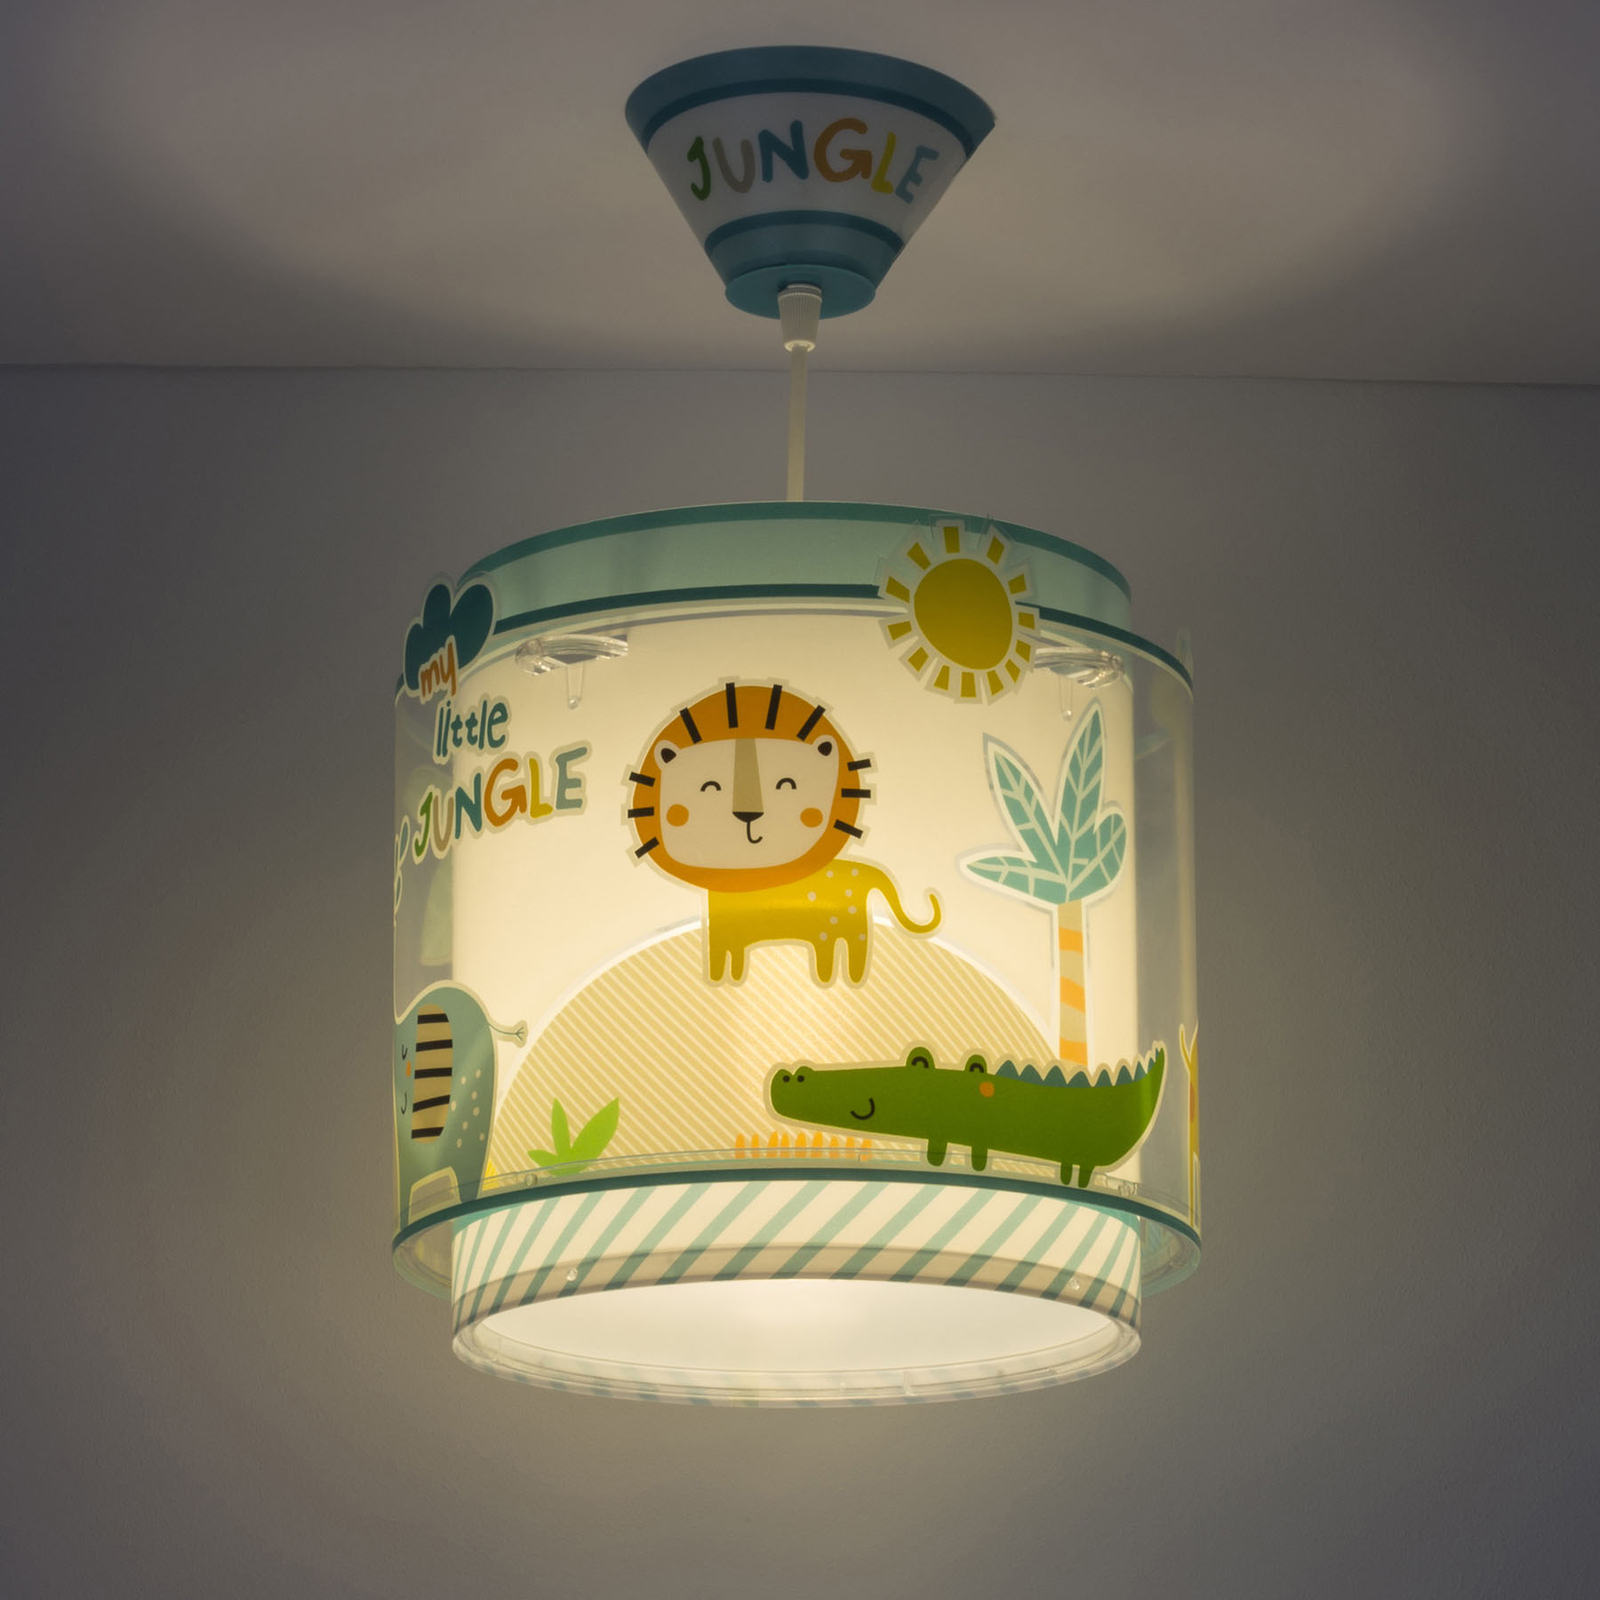 Little Jungle pendellampa för barn, en lampa